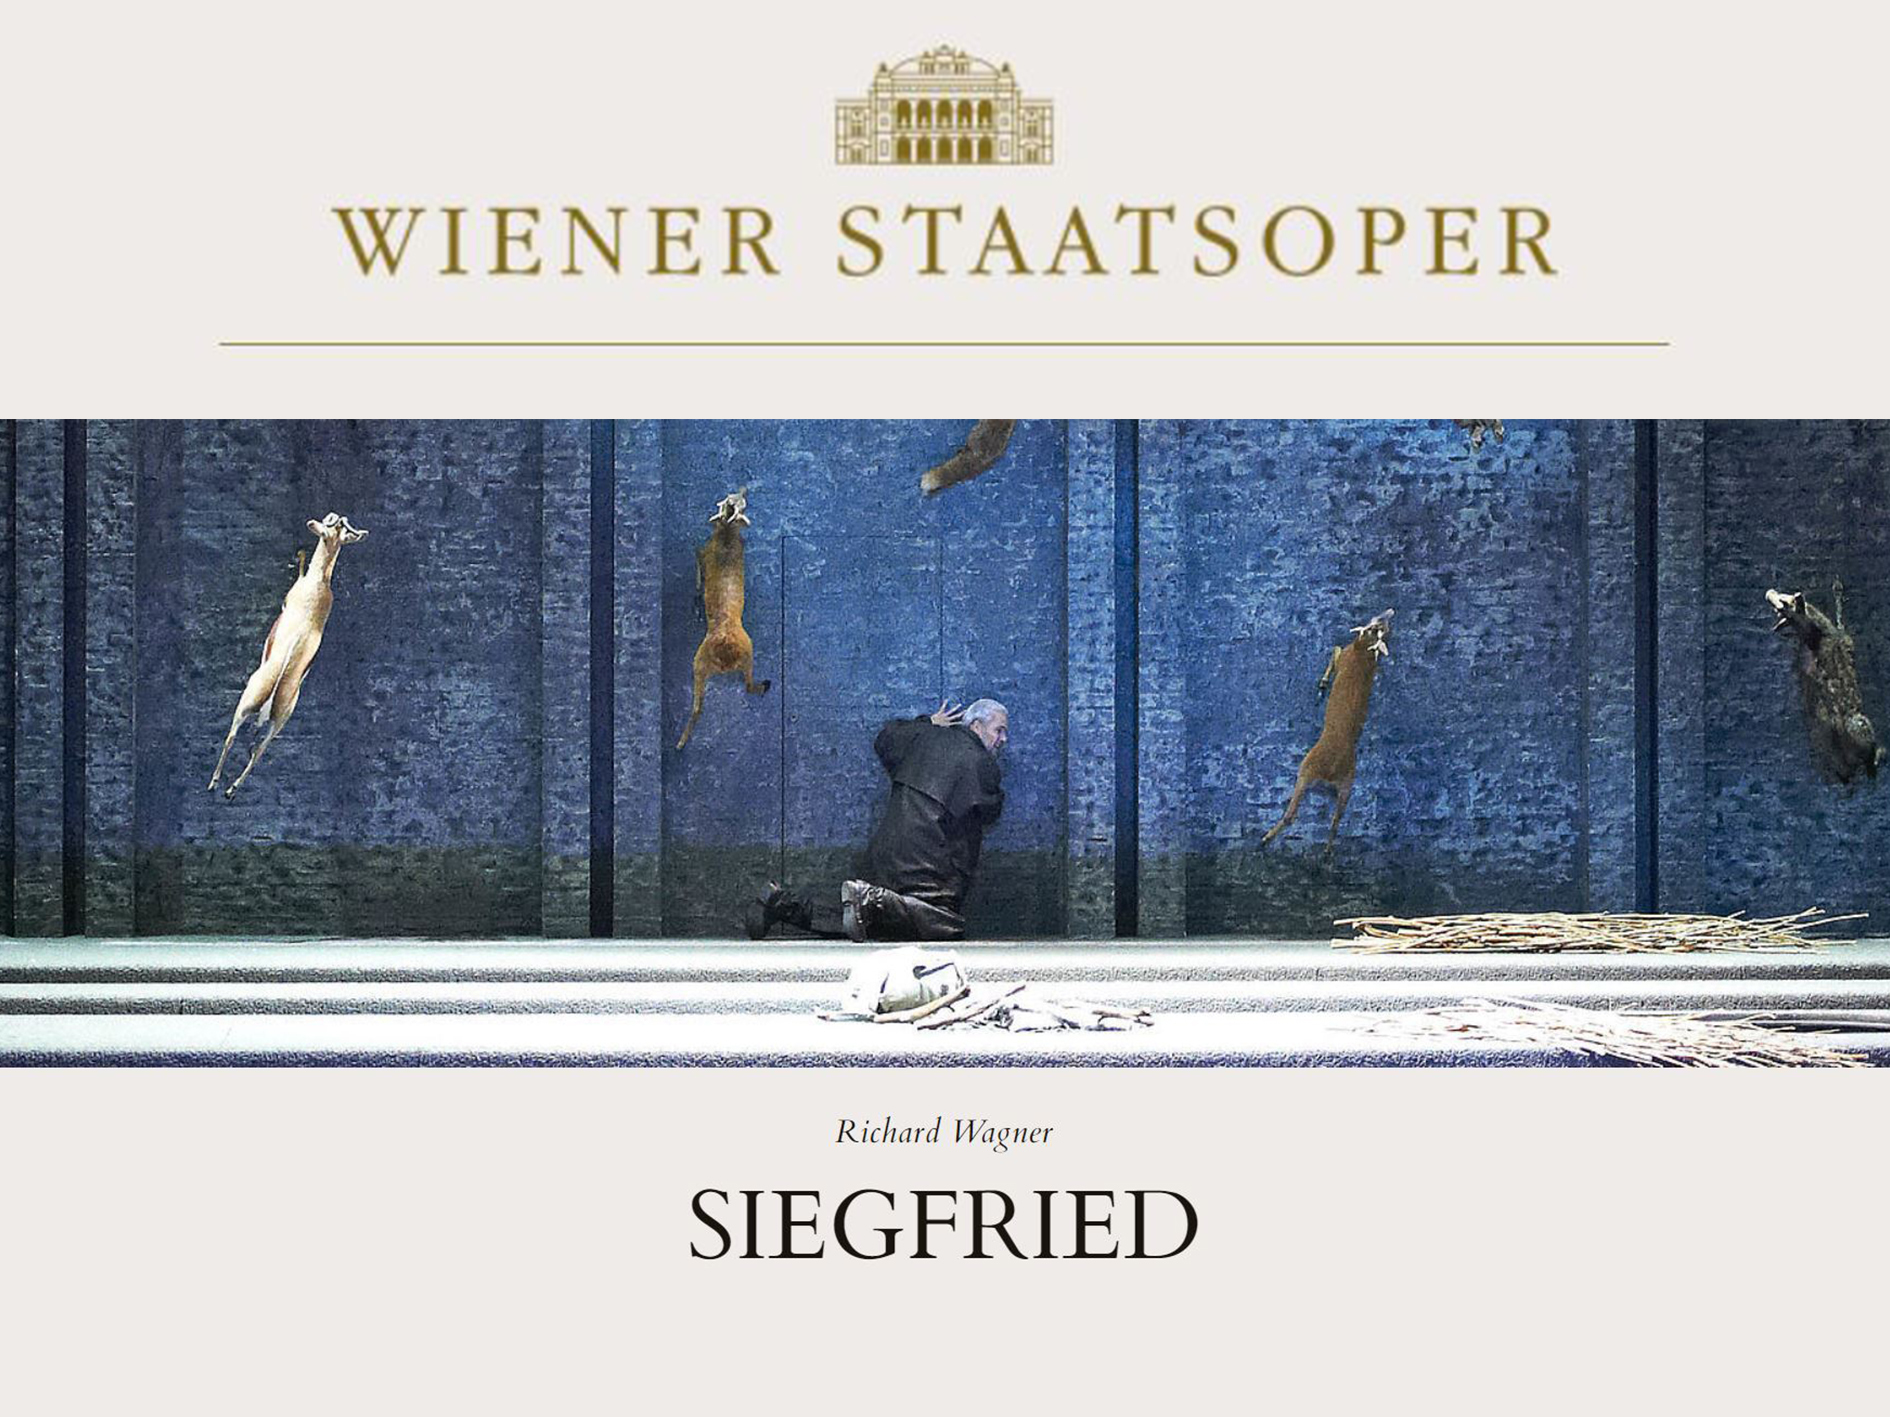 Siegfried - Wiener Staatsoper (2020) (Production - Wien, austria